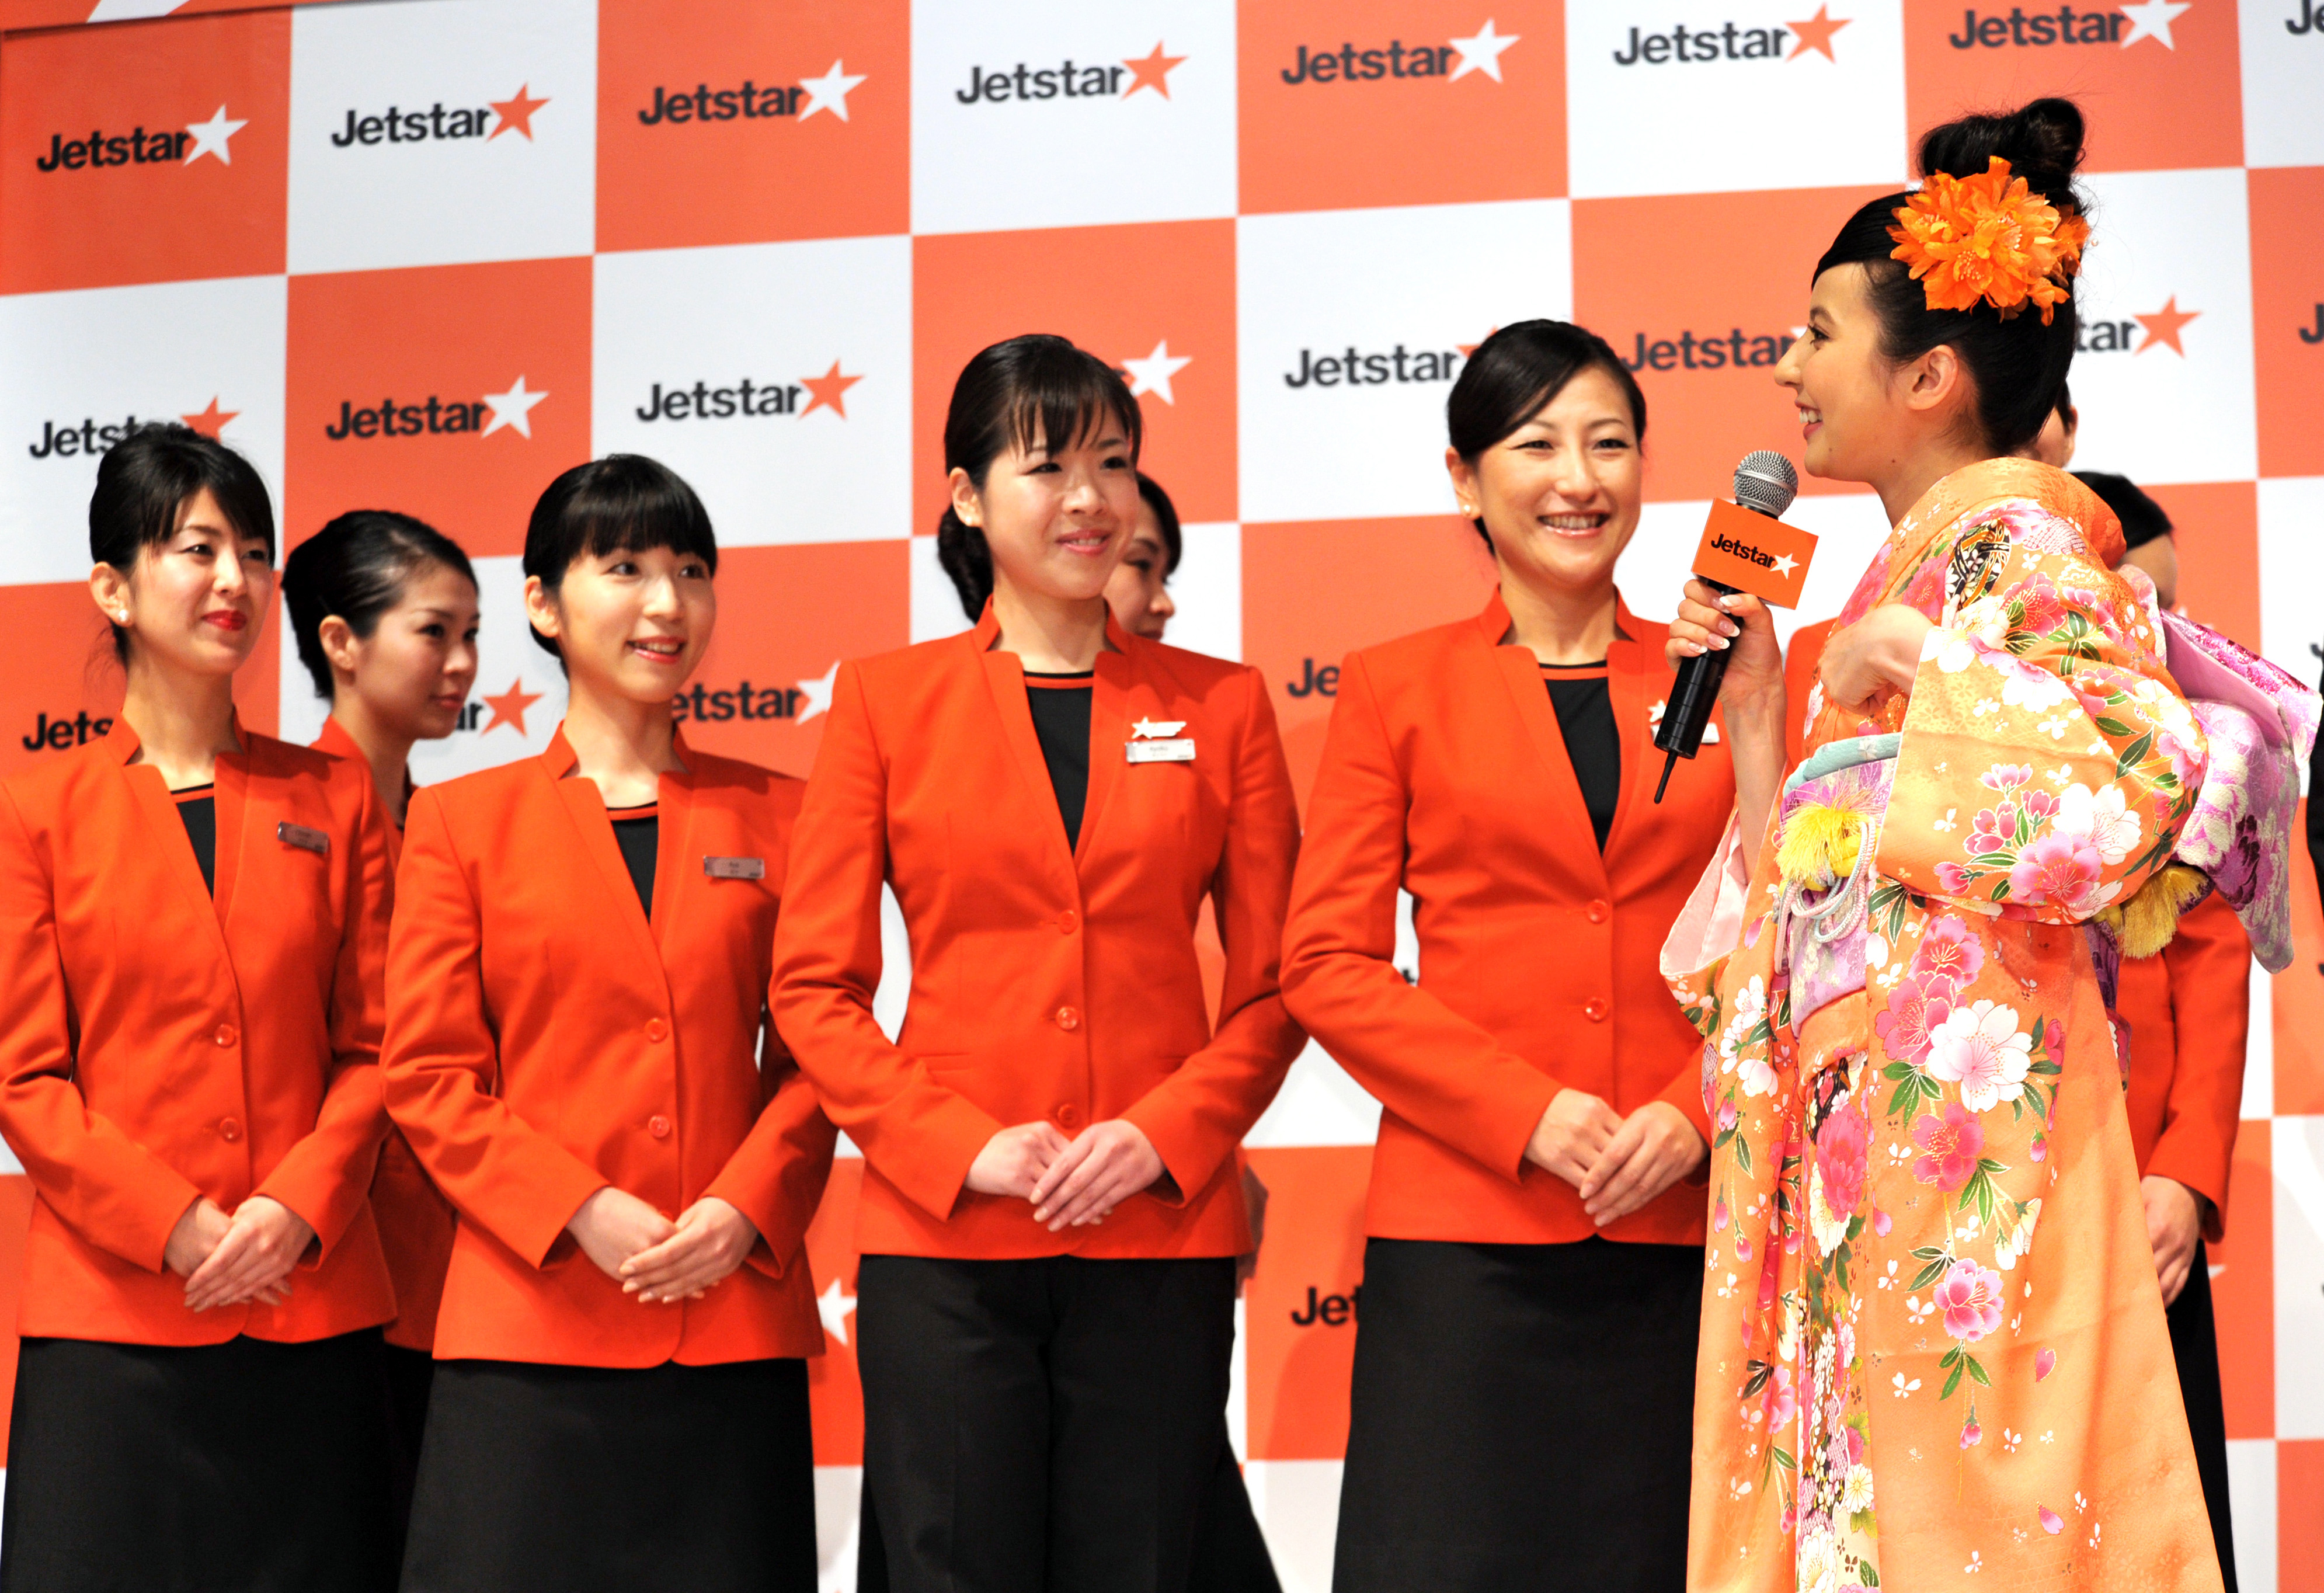 日本的企業文化讓外國人感到新奇。Getty Images